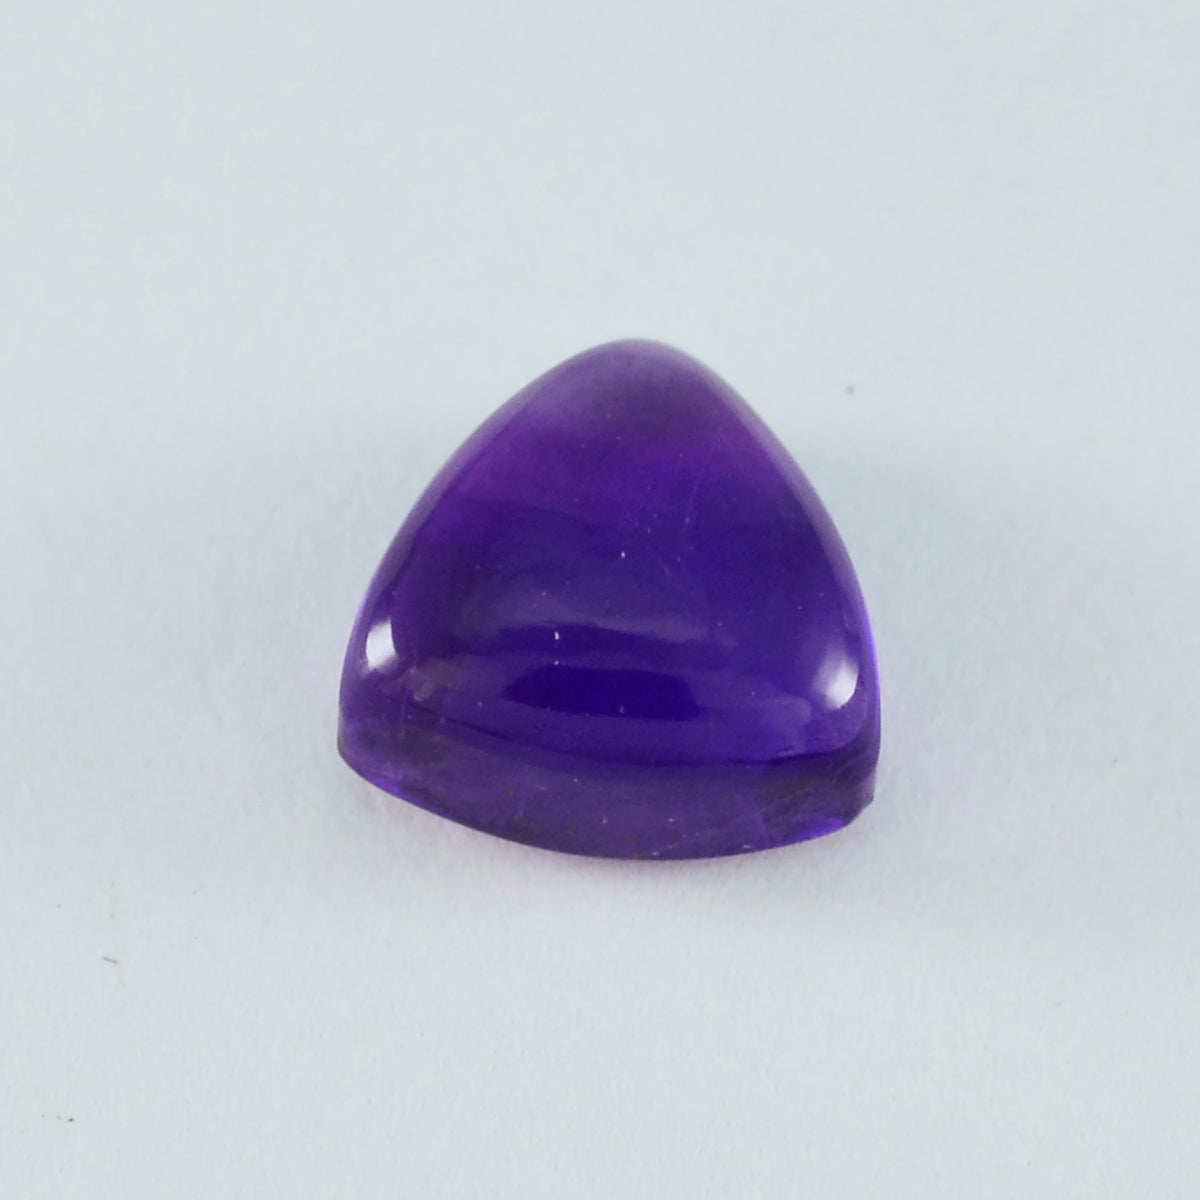 Riyogems 1PC Purple Amethyst Cabochon 9x9 mm Trillion Shape sweet Quality Gem